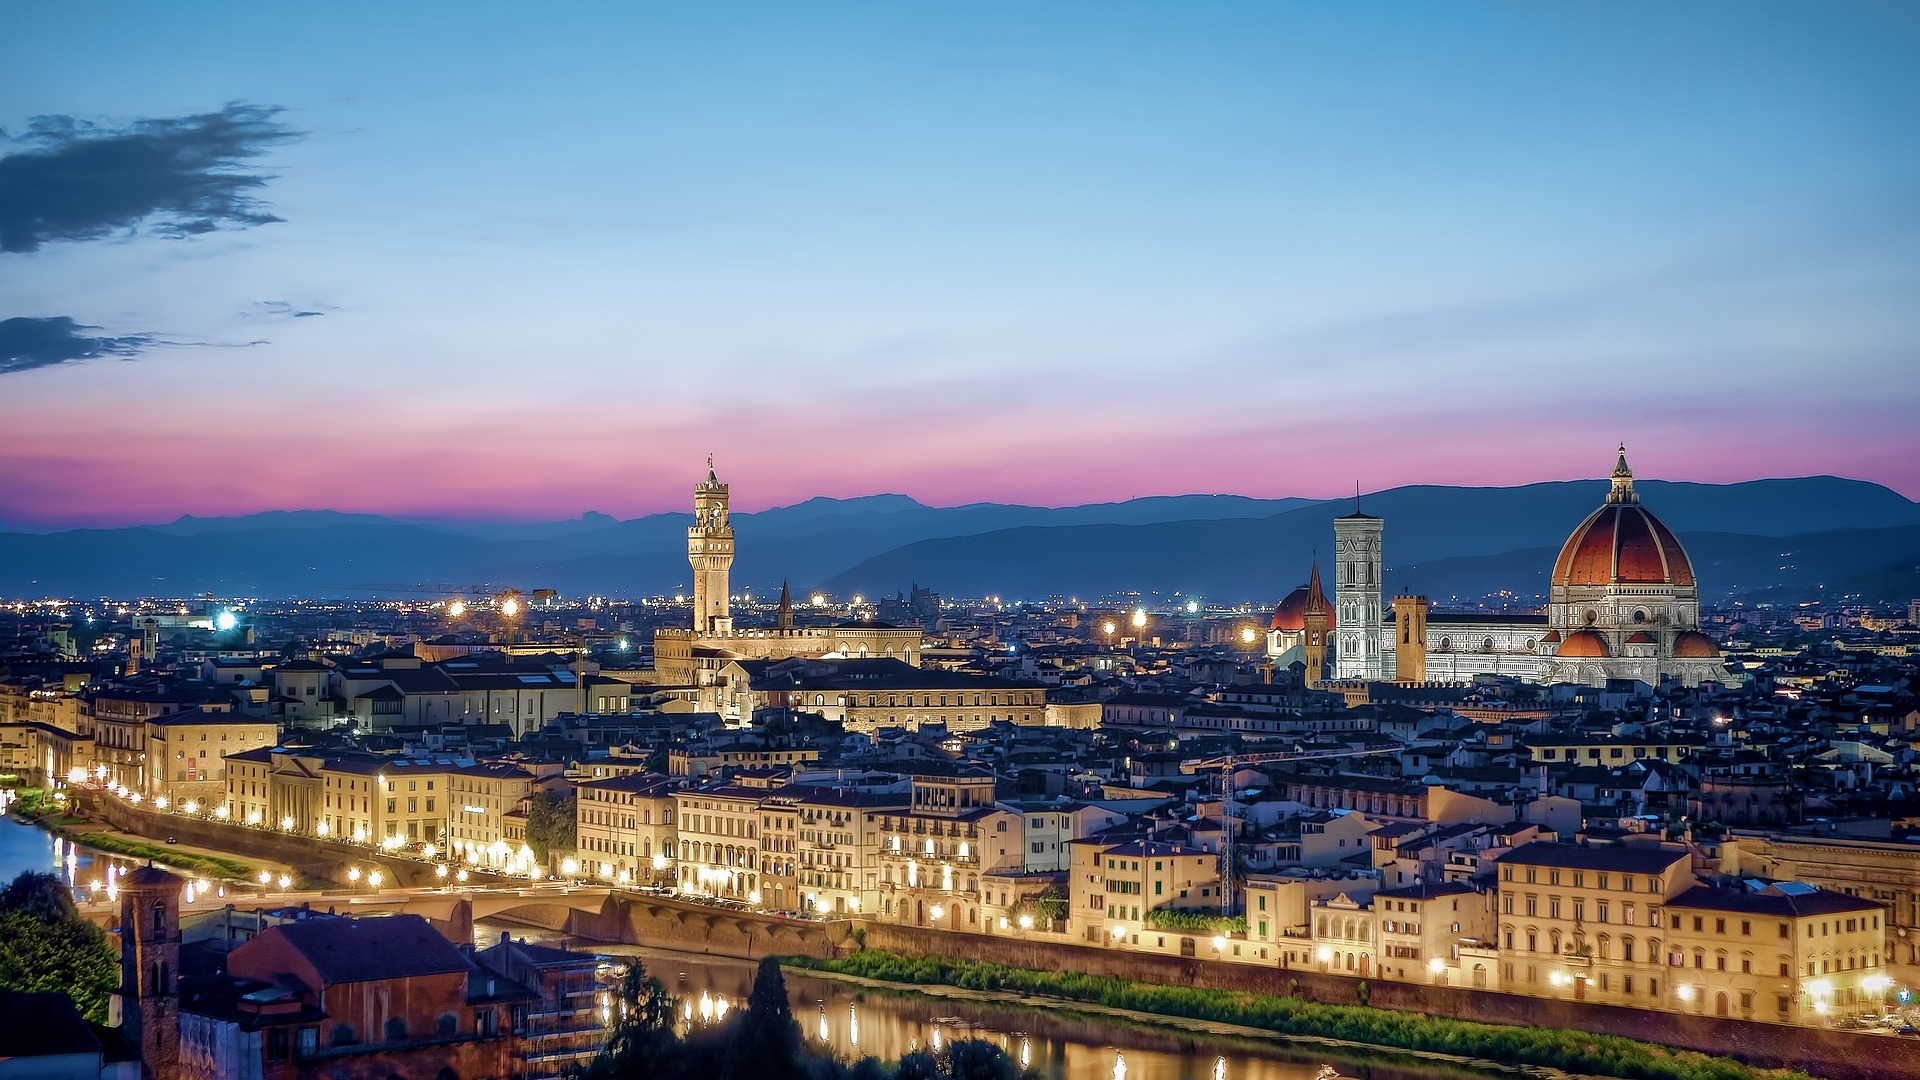 Florença, cidade berço do renascimento fechada para o mundo por tempo indeterminado (Foto: MustangJoe por Pixabay)